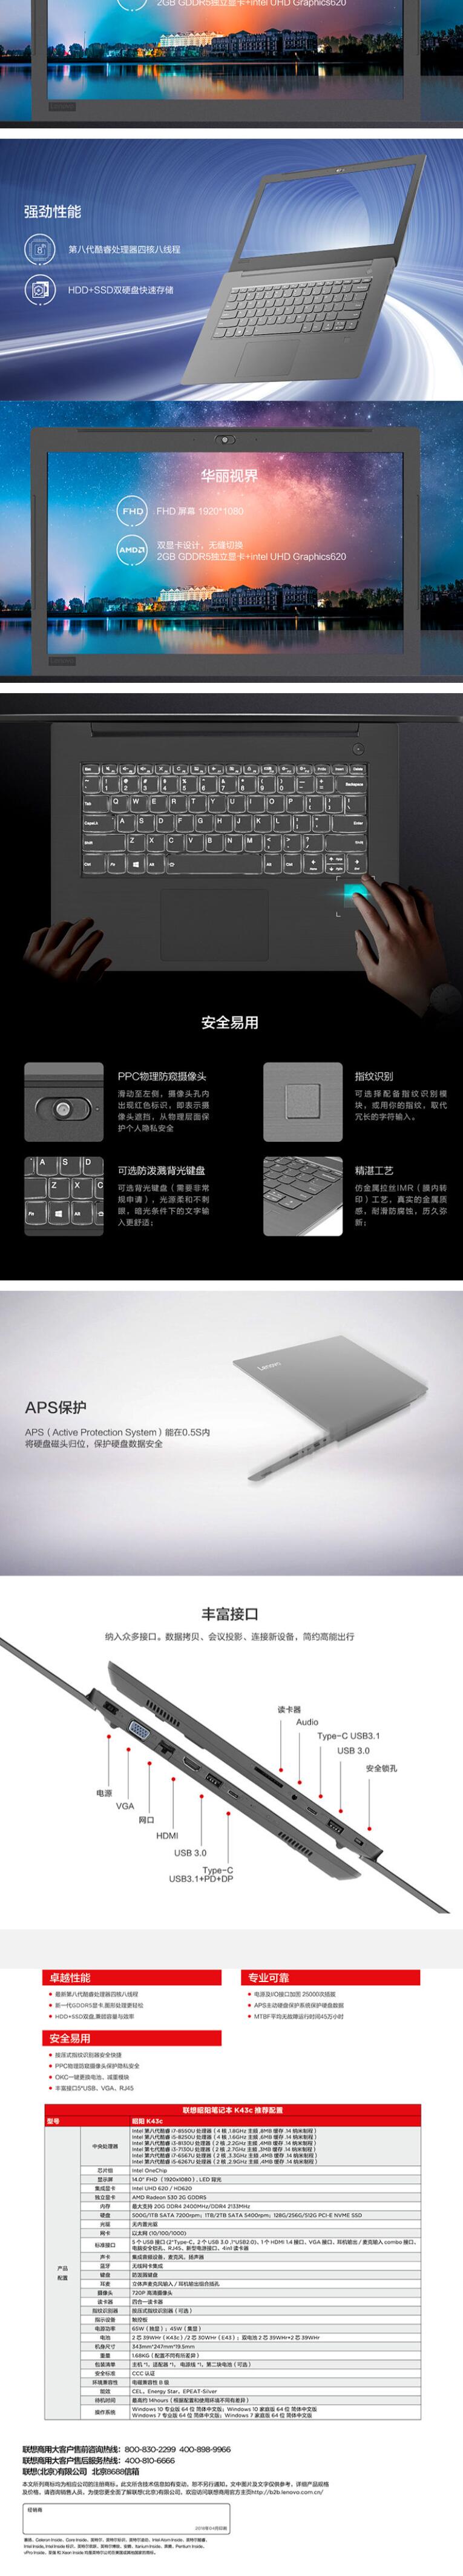 联想/Lenovo 昭阳 K43c-80380 笔记本电脑 i7-8550u 8G 1T+256G 2G独显       (图6)